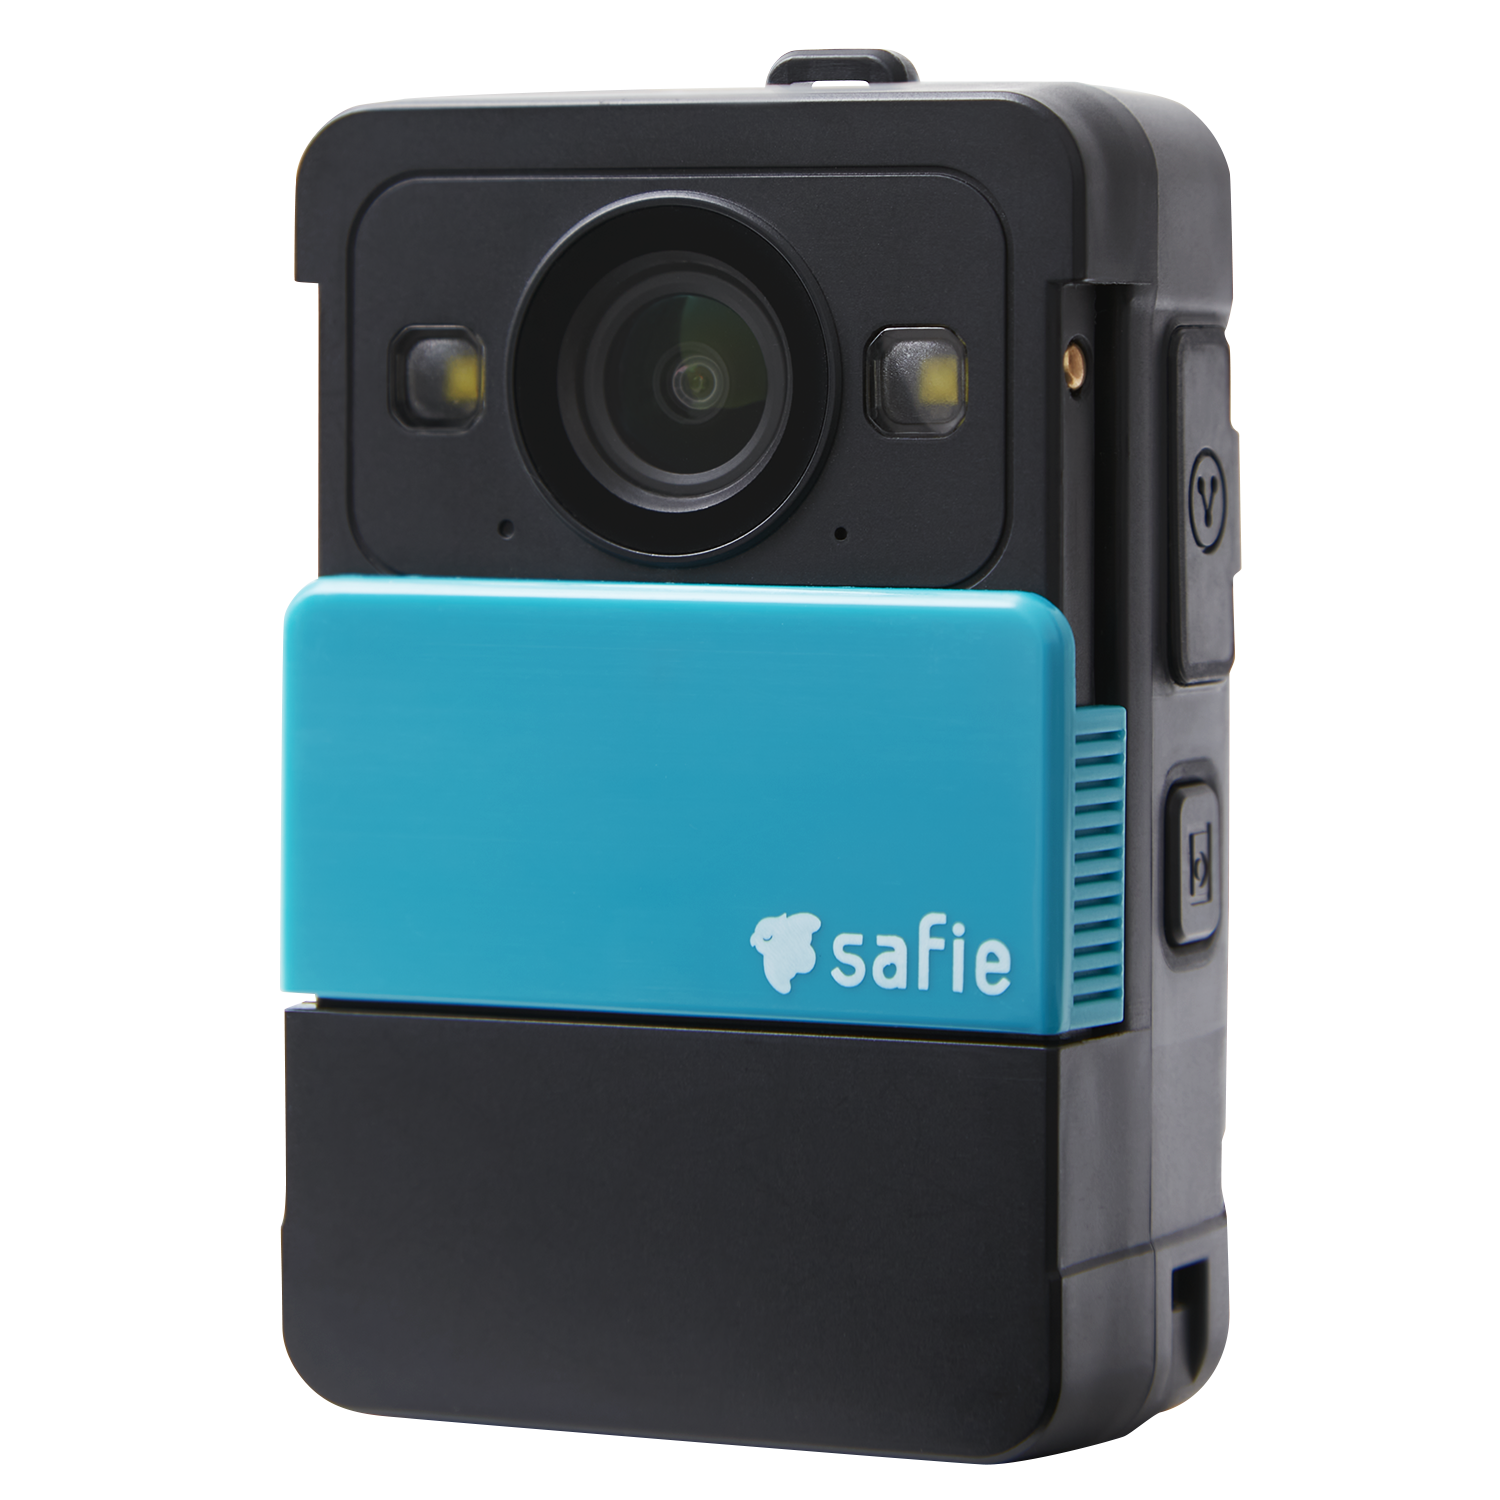 ウェアラブルクラウドカメラ「Safie Pocket2 保証プラン」の提供を開始